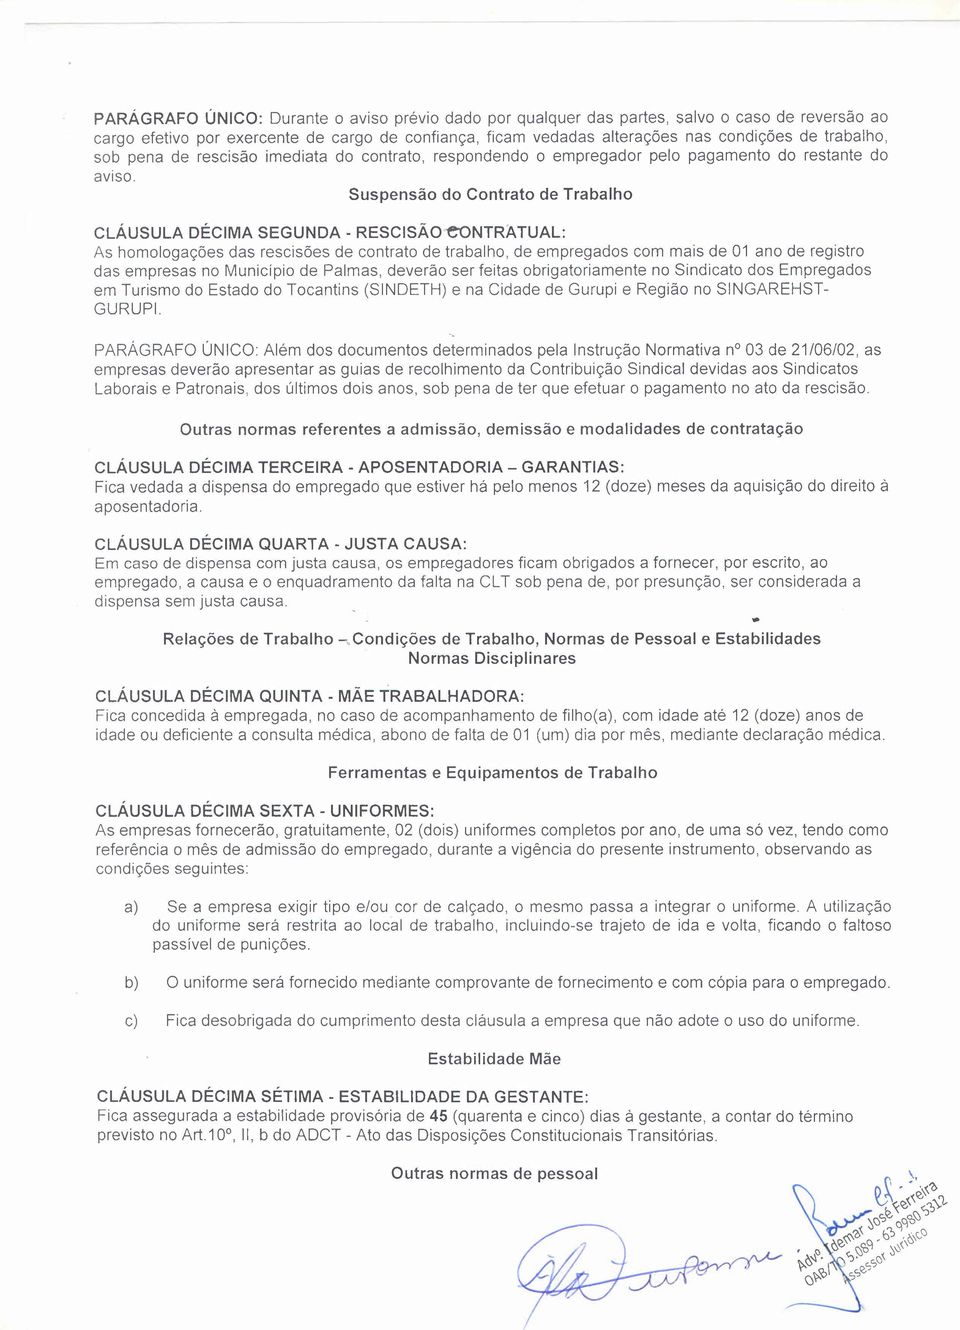 Suspensão do Contrato de Trabalho CLÁUSULA DÉCIMA SEGUNDA - RESCISÃOeoNTRATUAL: As homologações das rescisões de contrato de trabalho, de empregados com mais de 01 ano de registro das empresas no